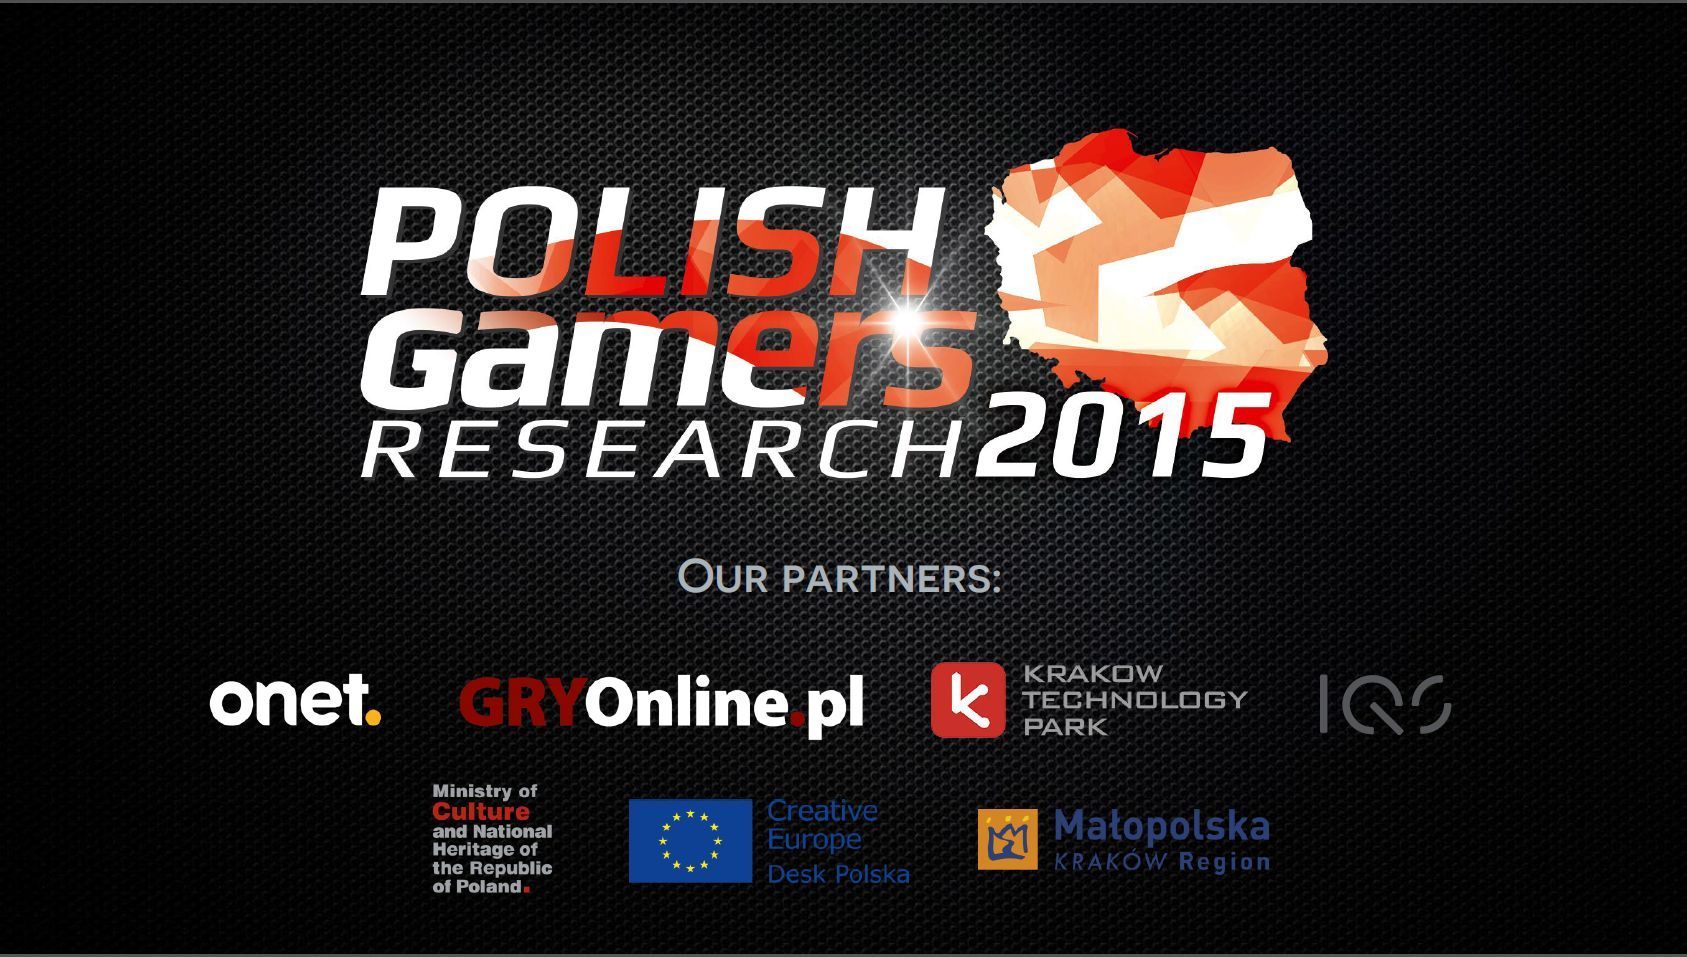 Gry w Polsce to stale rosnący rynek - Najpopularniejsze platformy i gatunki gier w Polsce według badań na Digital Dragons 2015 - wiadomość - 2015-05-23